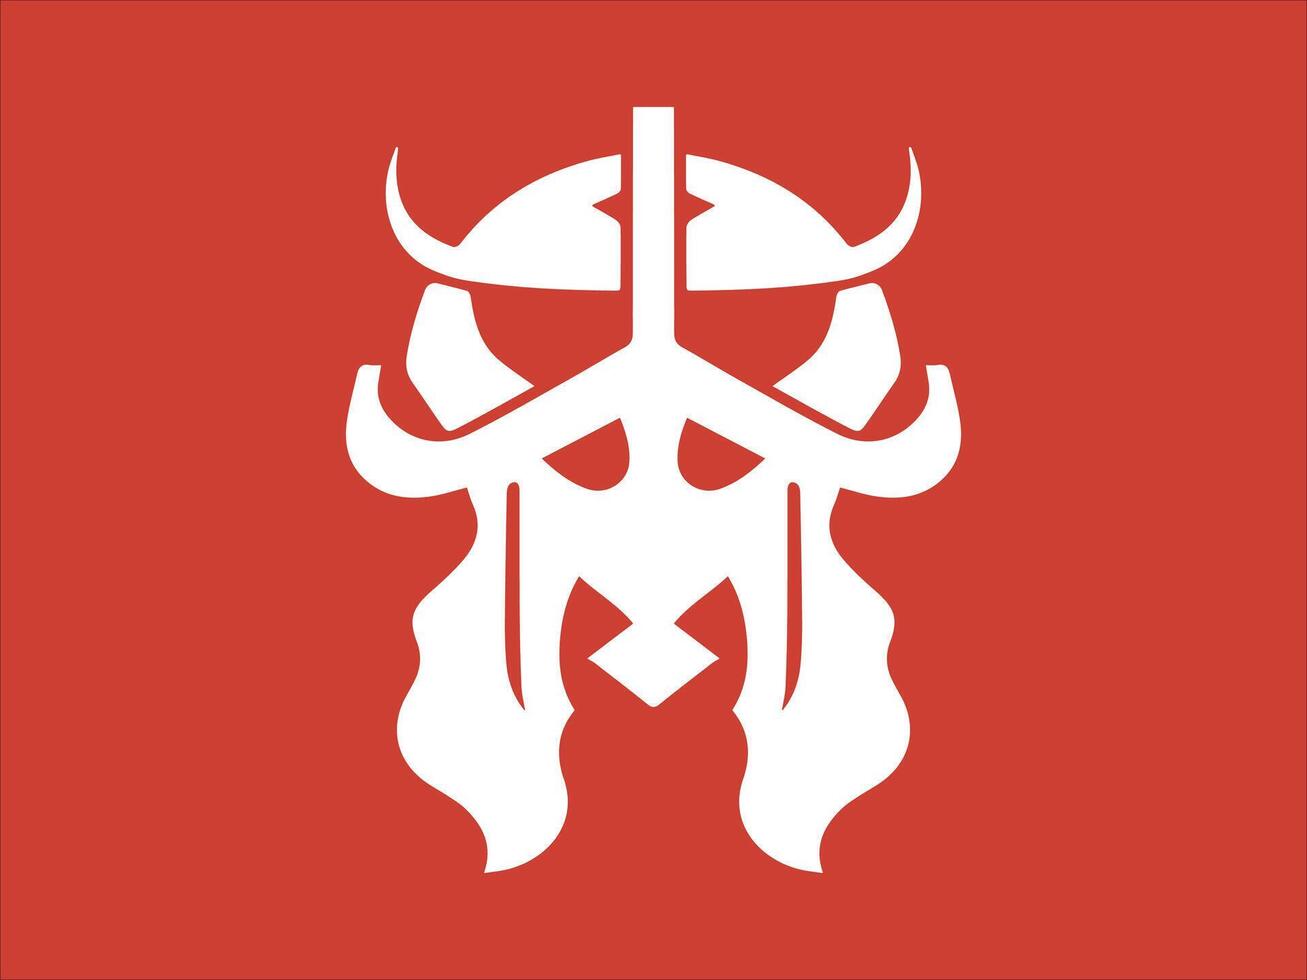 viking logo conception icône symbole vecteur illustration